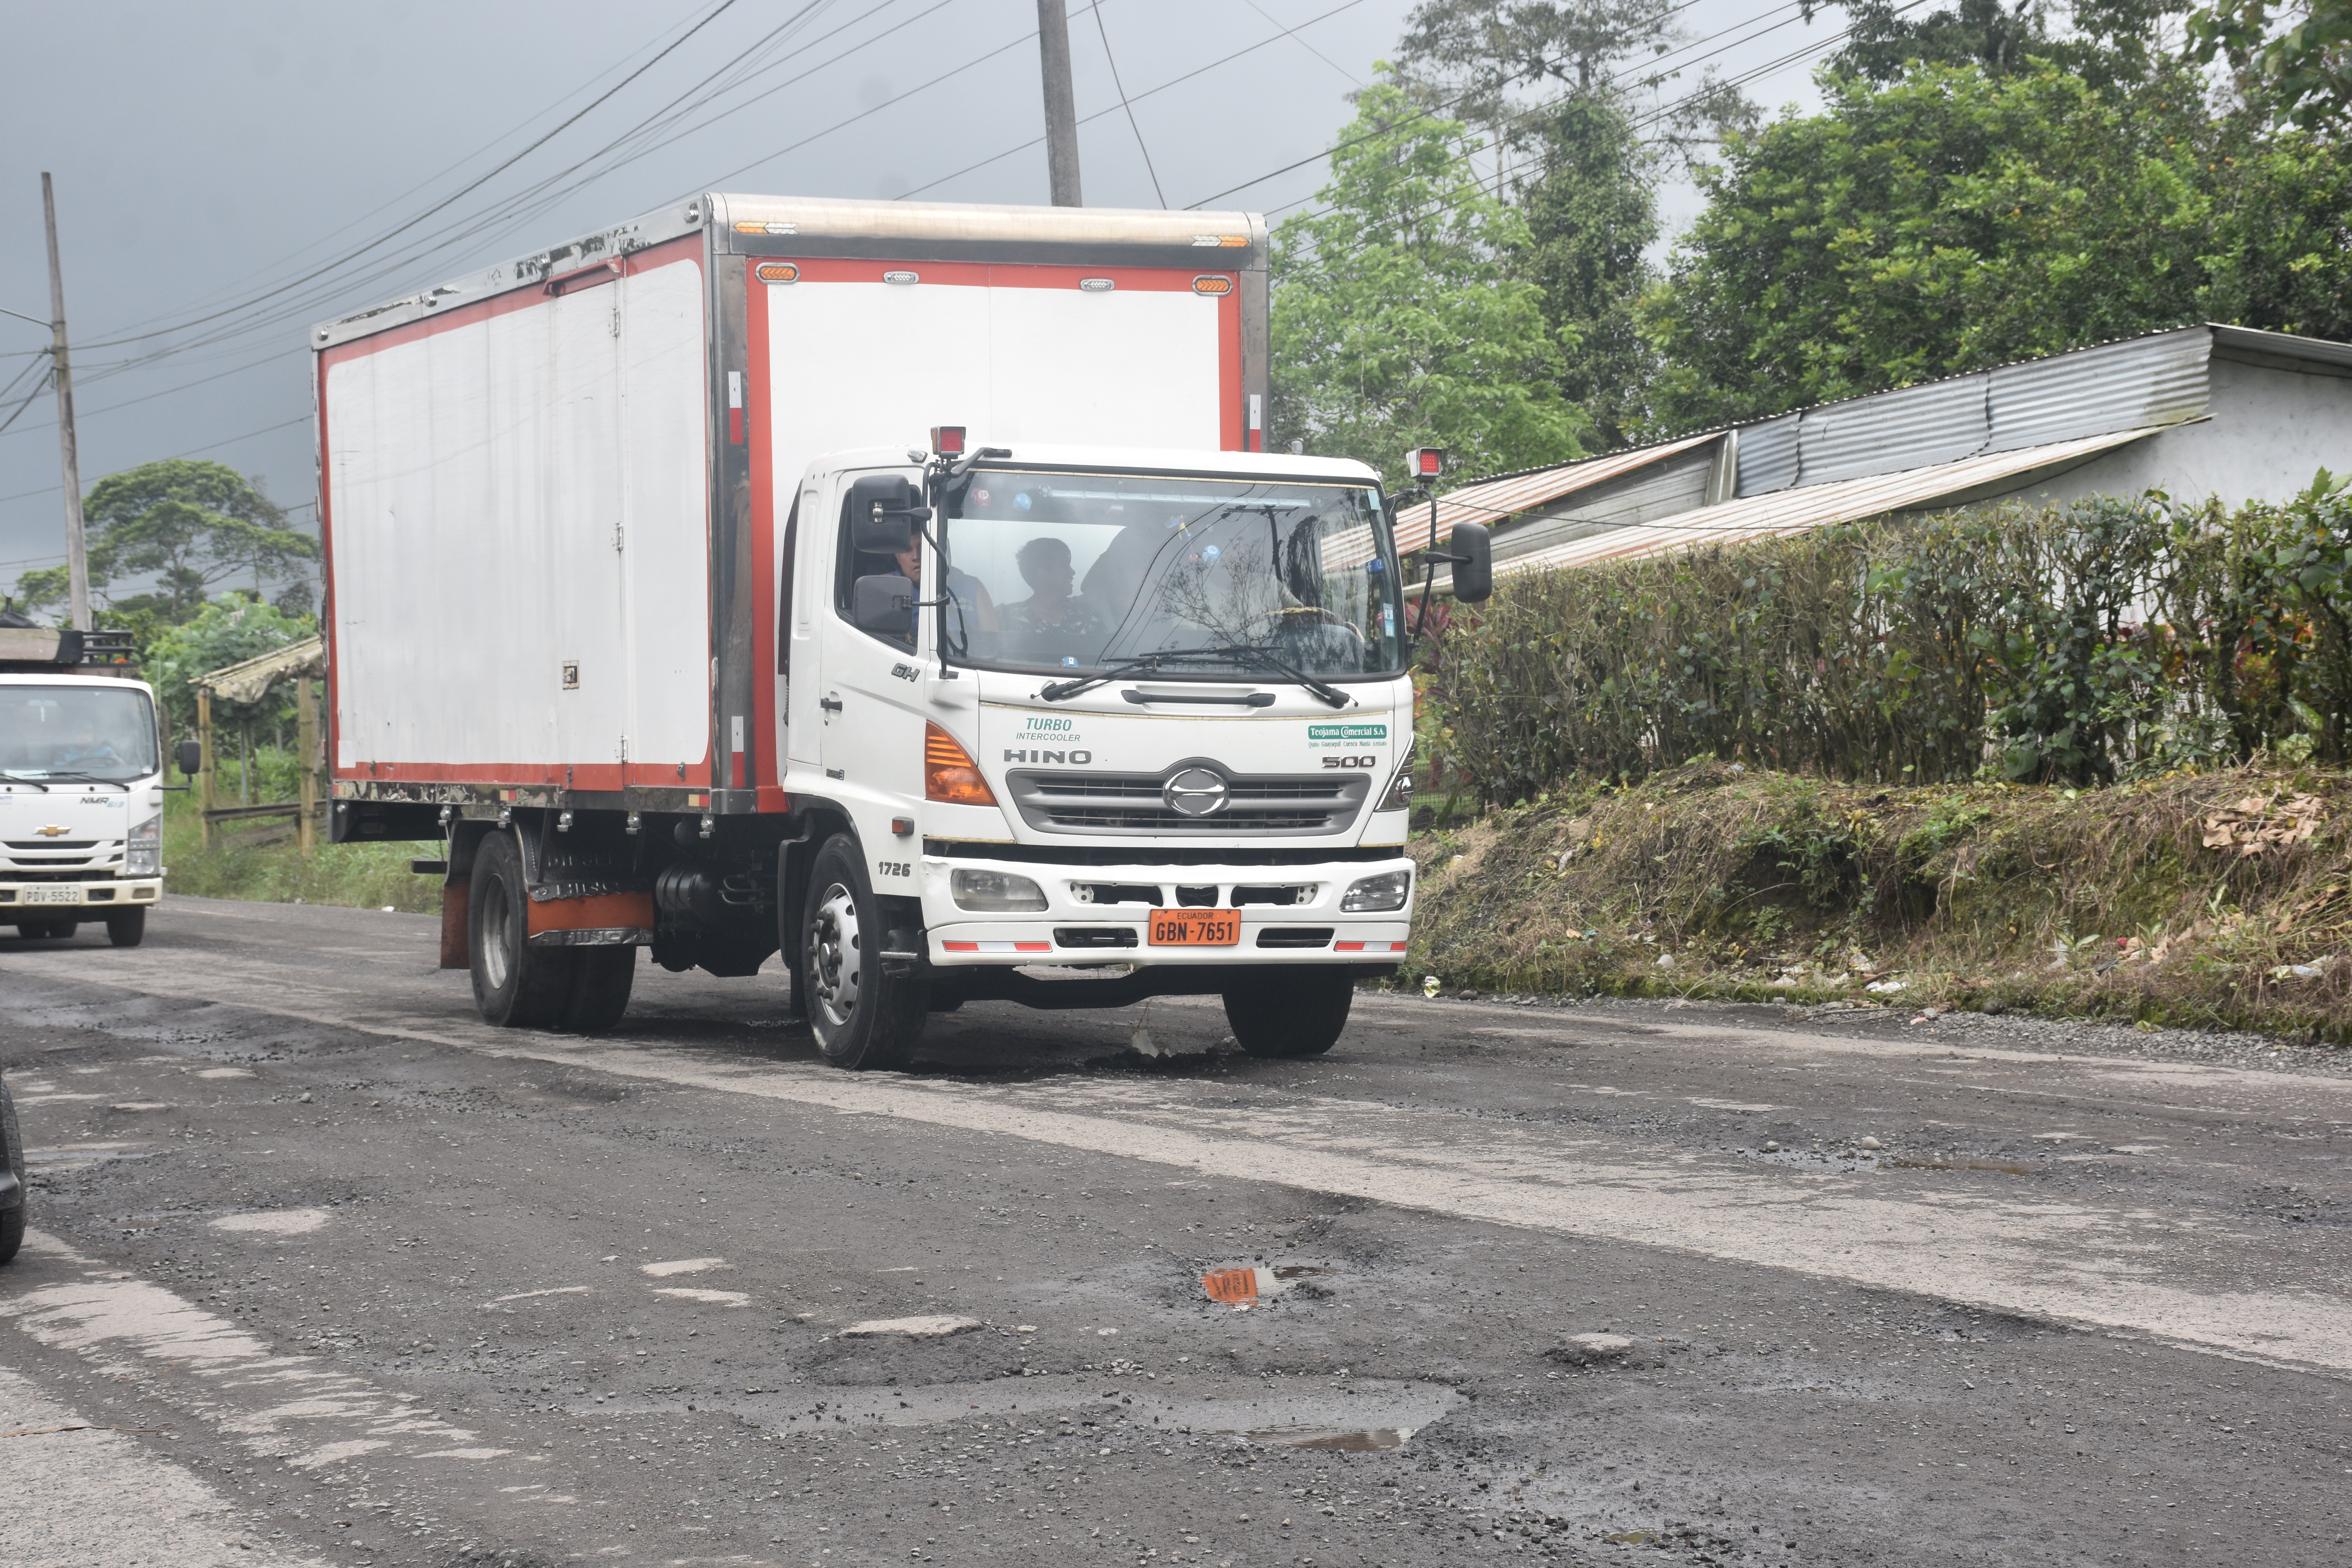 Los asaltos a camioneros son cada vez  más frecuentes en la vía Santo Domingo-10 de Agosto-Las Mercedes-Los Bancos.